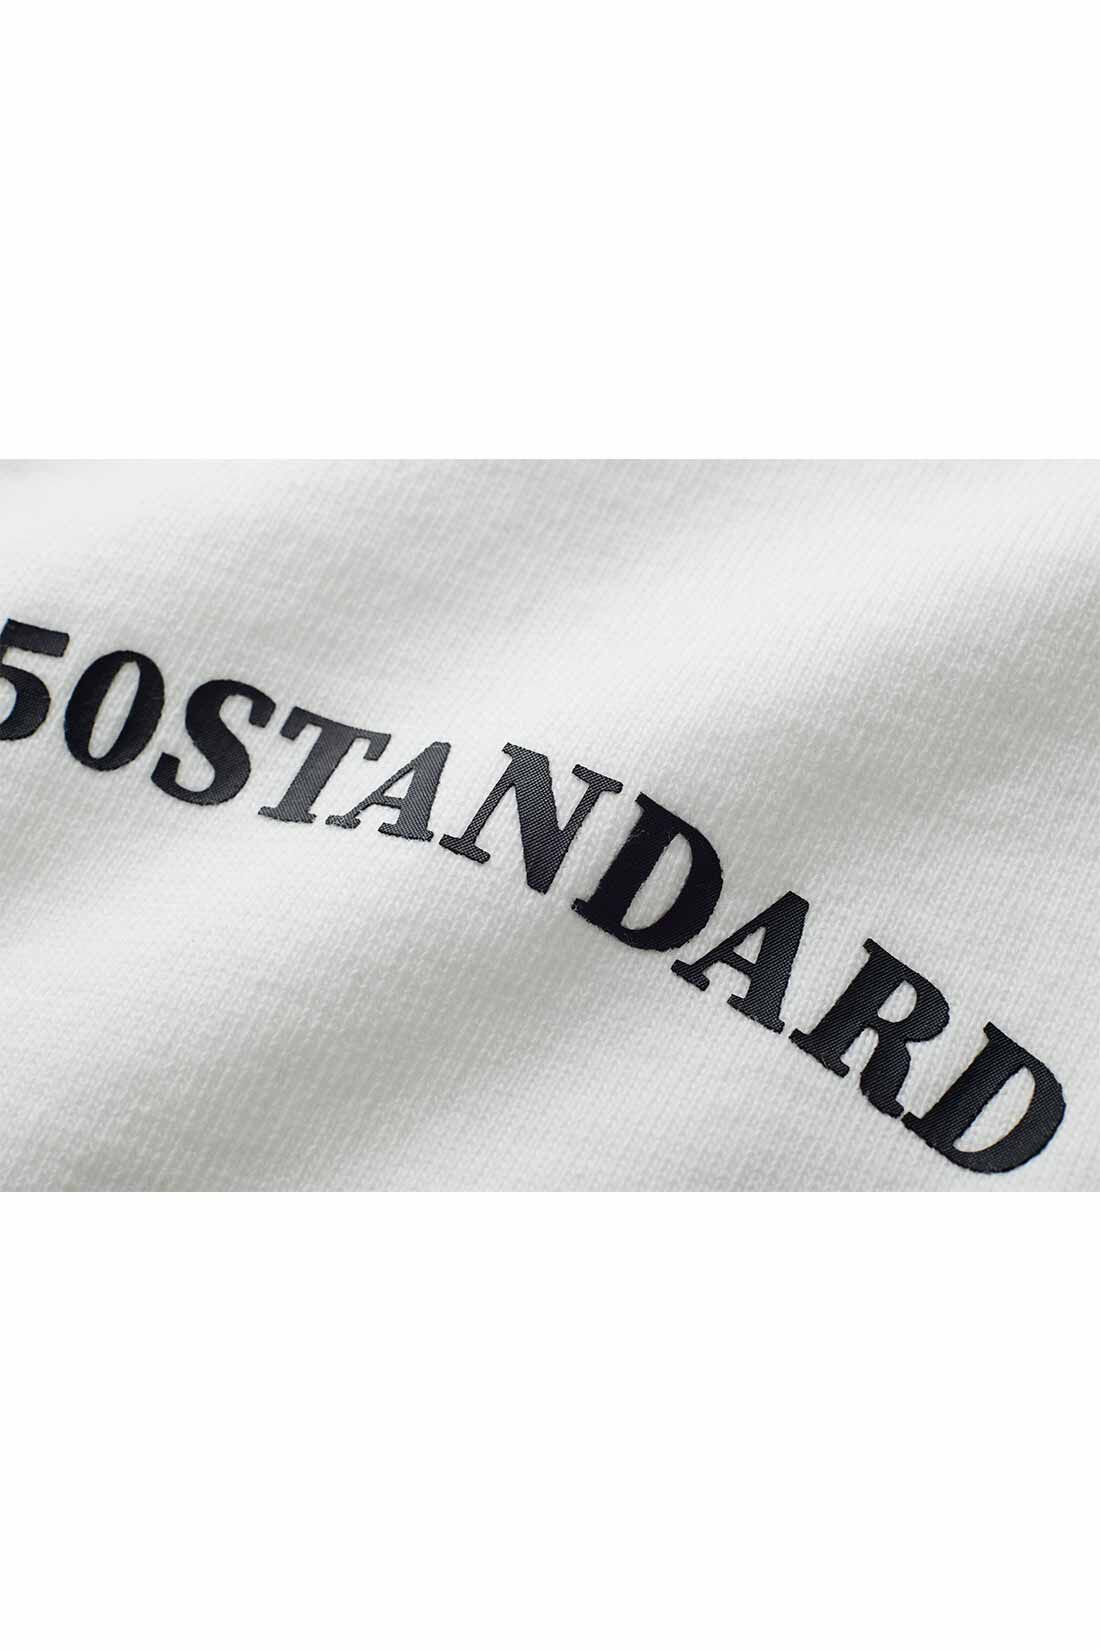 THREE FIFTY STANDARD|THREE FIFTY STANDARD モノトーンロゴTシャツ〈オフホワイト〉|控えめサイズのプリントロゴを胸のセンターに配置。